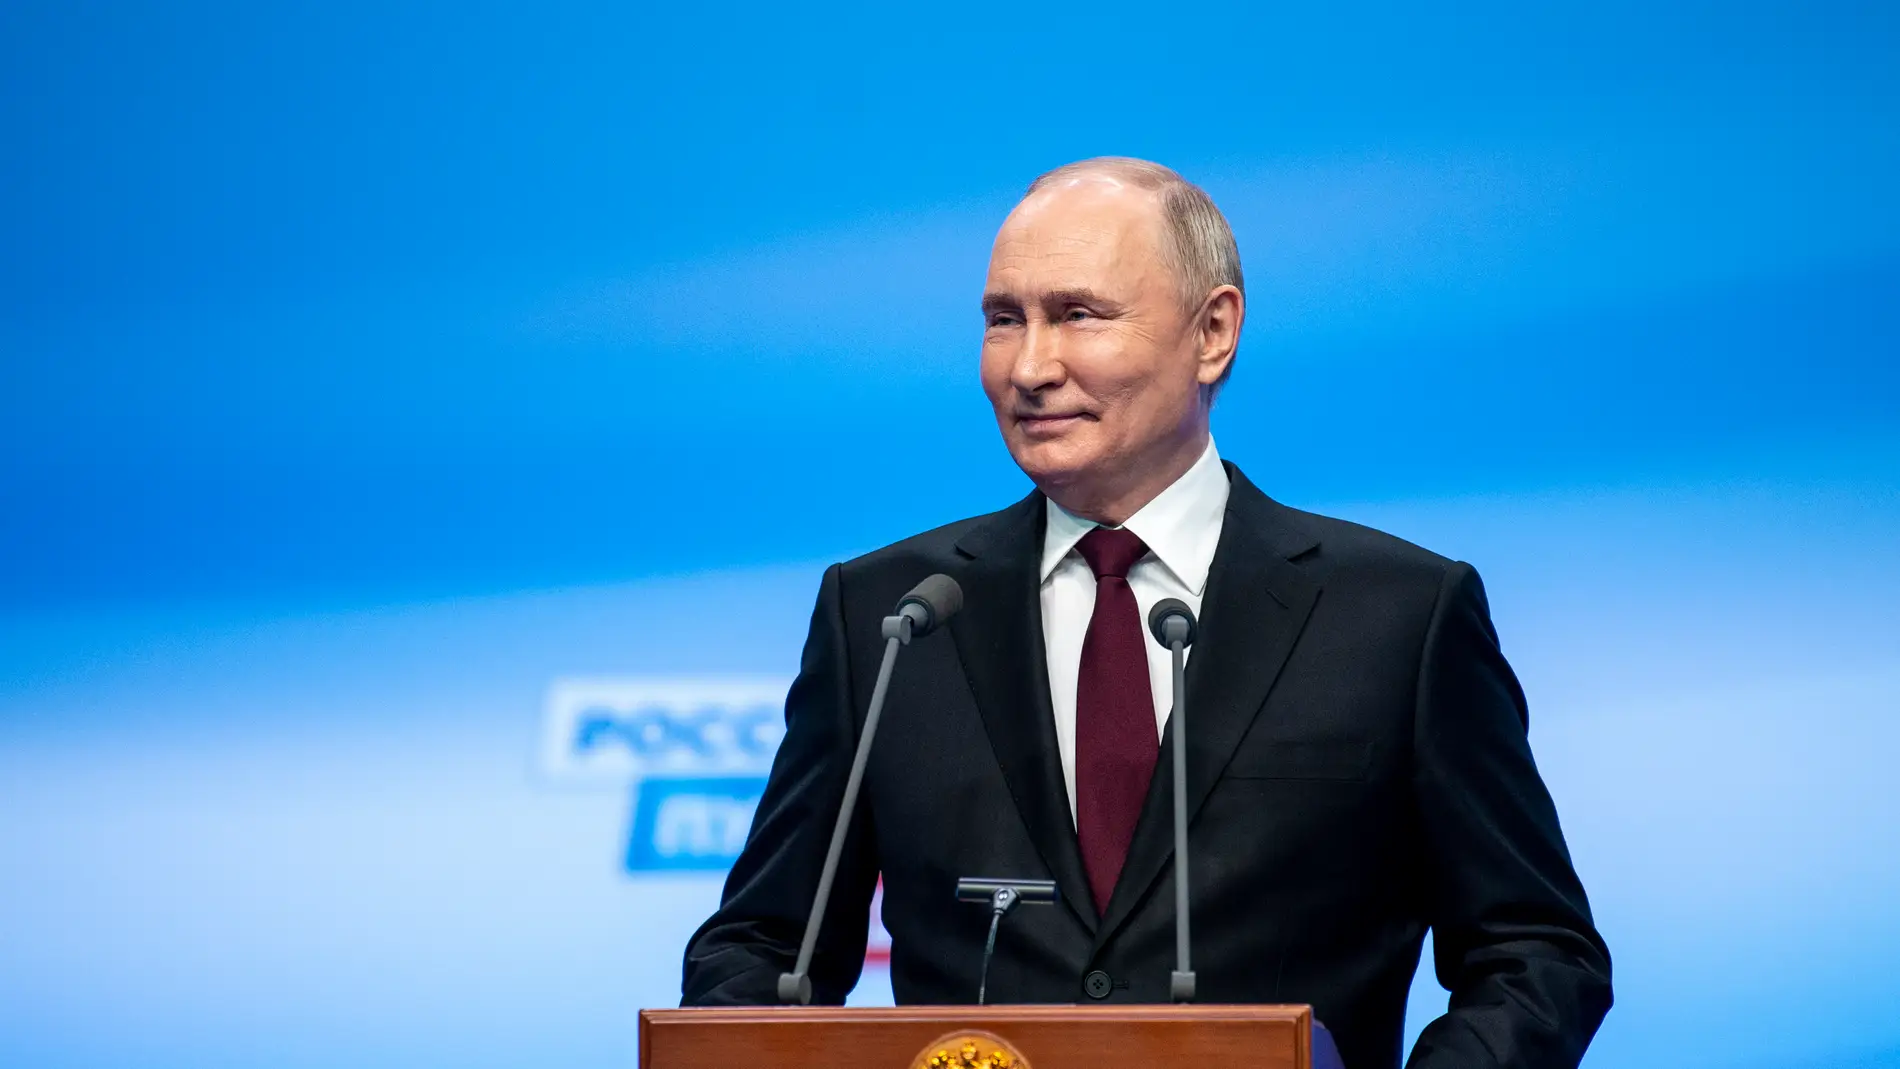 Vladimir Putin tras su victoria electoral en las elecciones presidenciales rusas